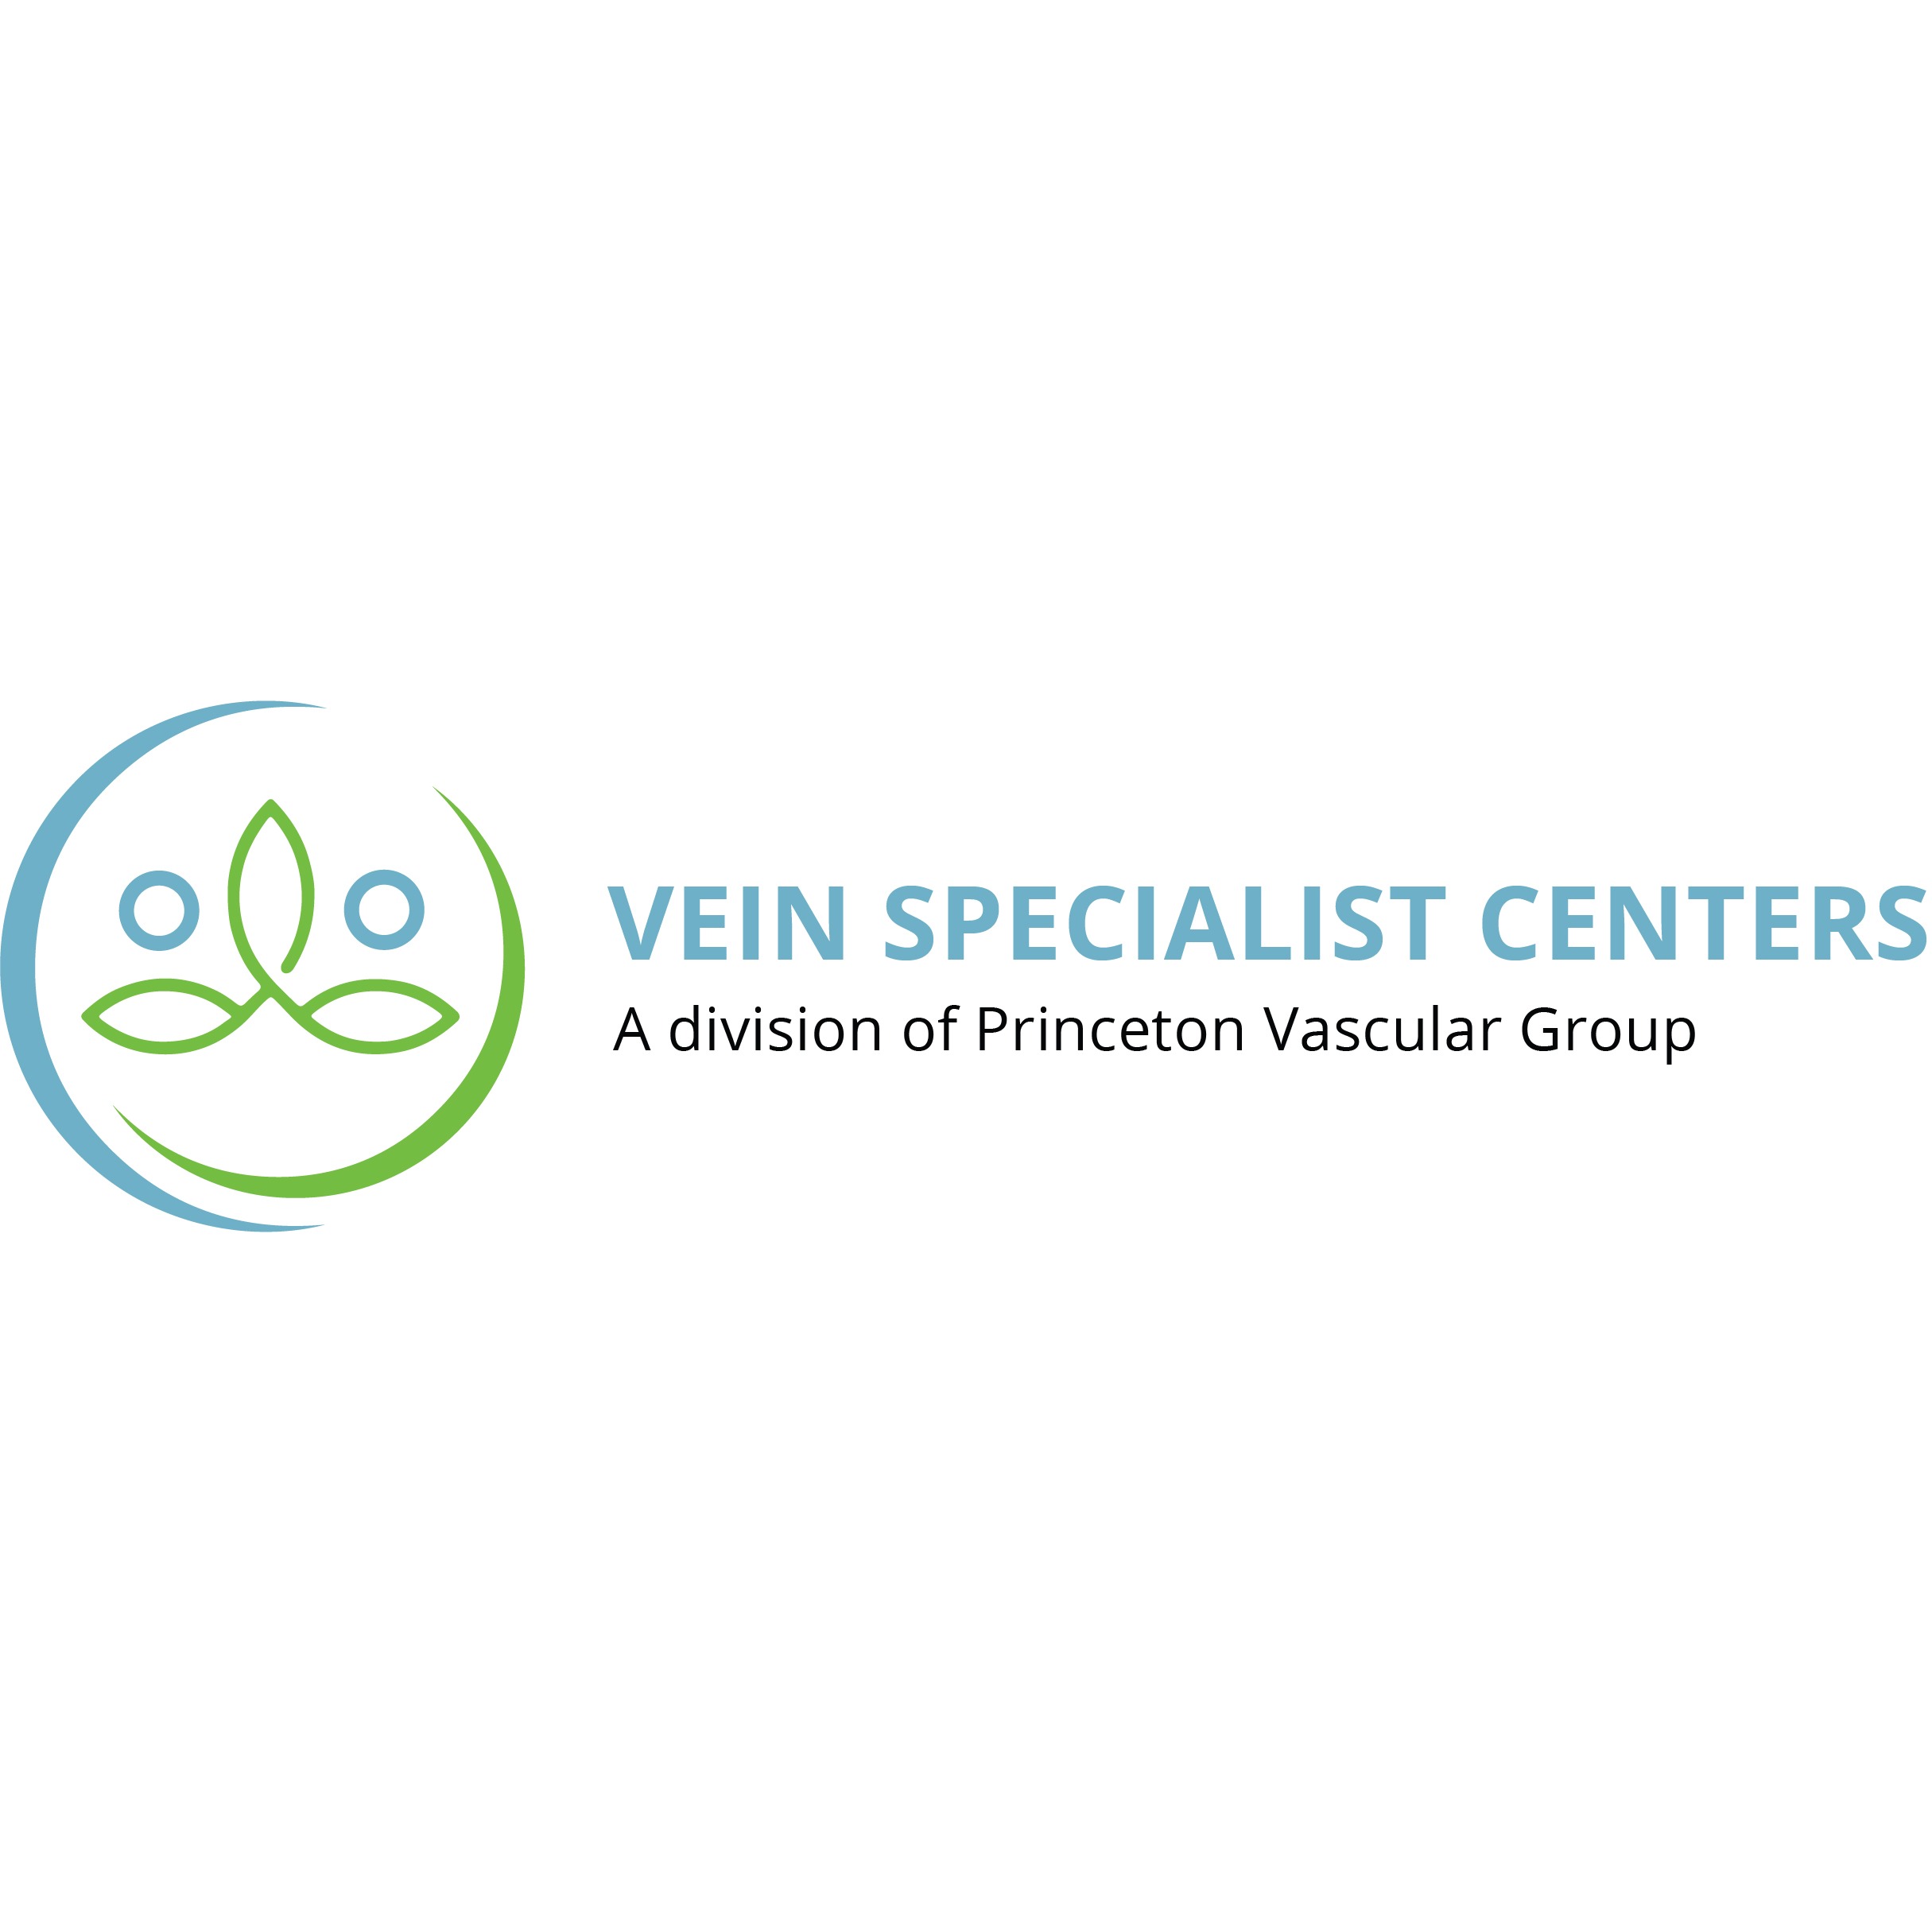 Vein Specialist Centers